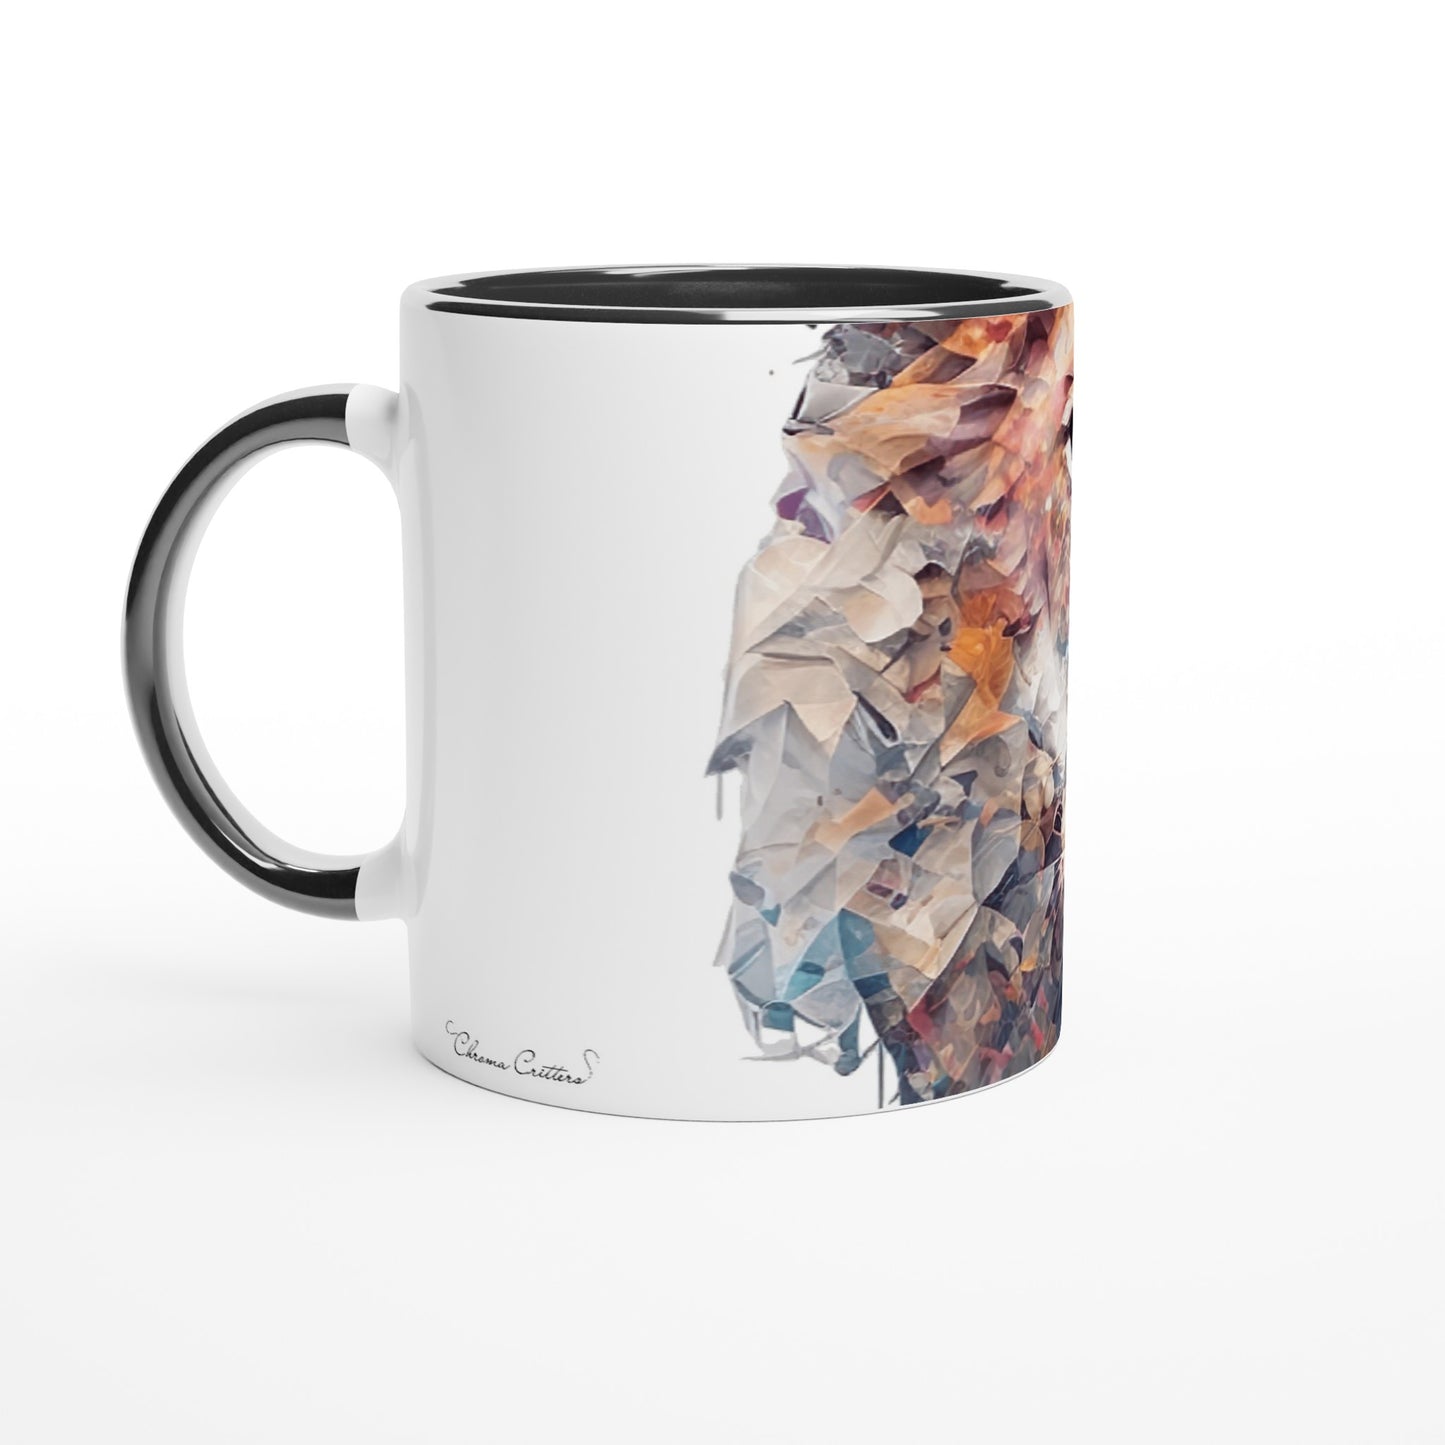 Lion - 11oz Ceramic Mug with Color Inside